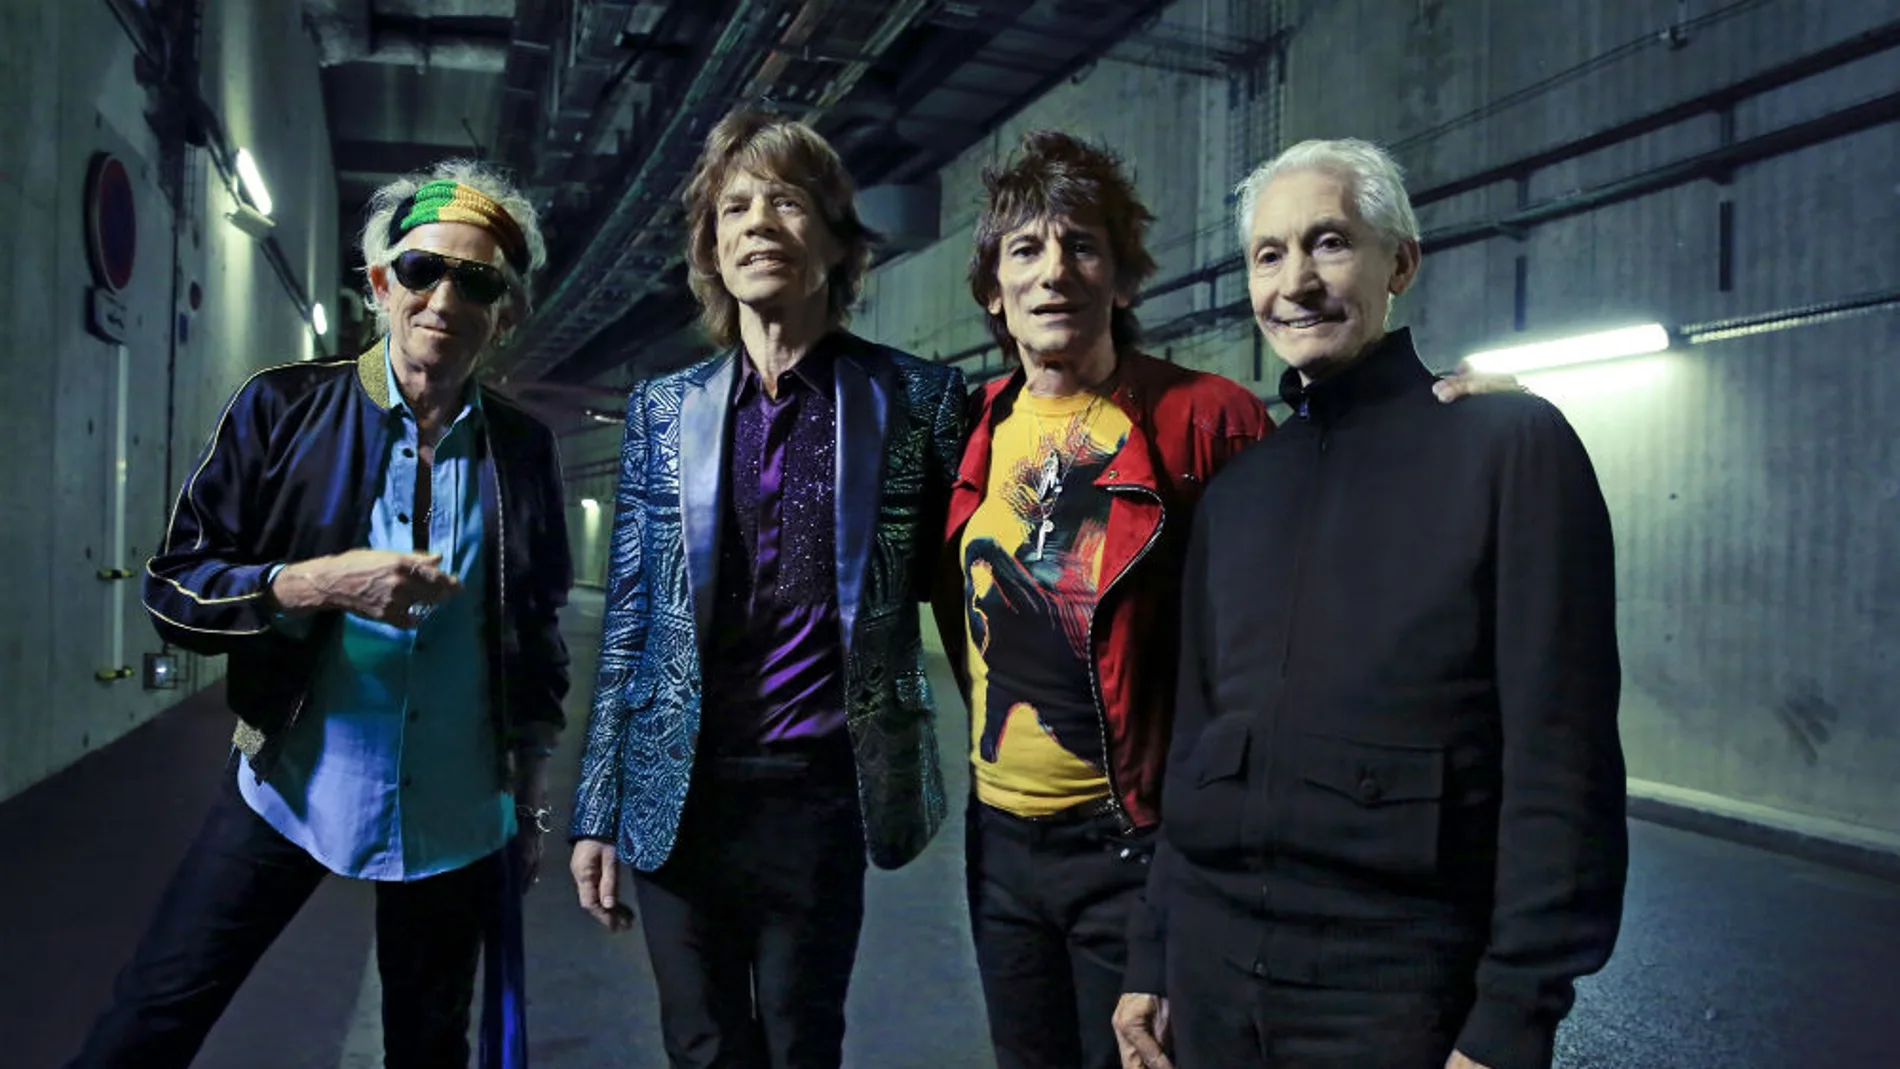 The Rolling Stones anuncian un concierto en Barcelona dentro de su gira europea 2017